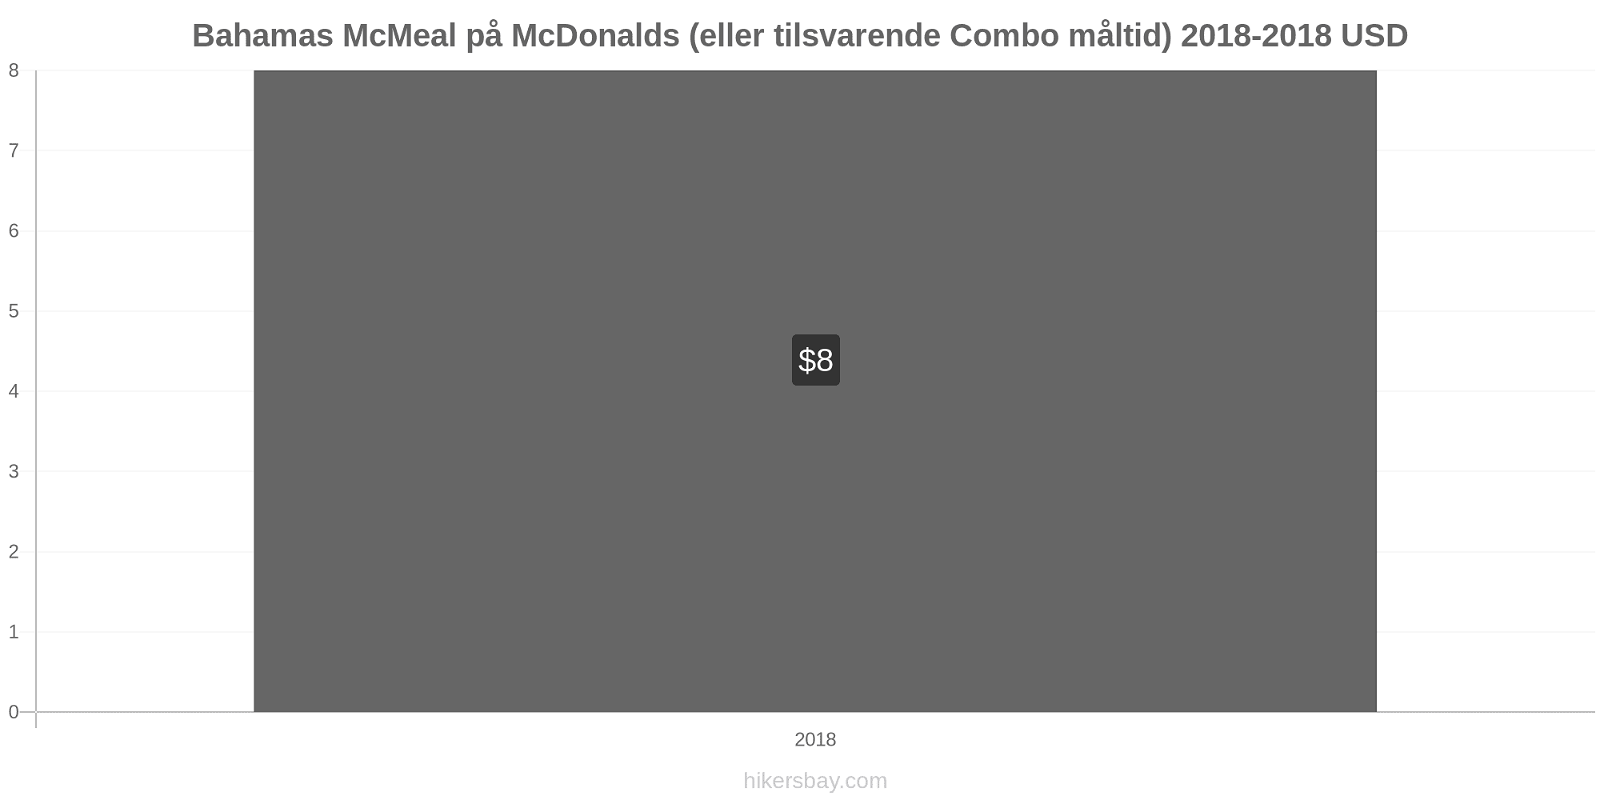 Bahamas prisændringer McMeal på McDonalds (eller tilsvarende Combo måltid) hikersbay.com